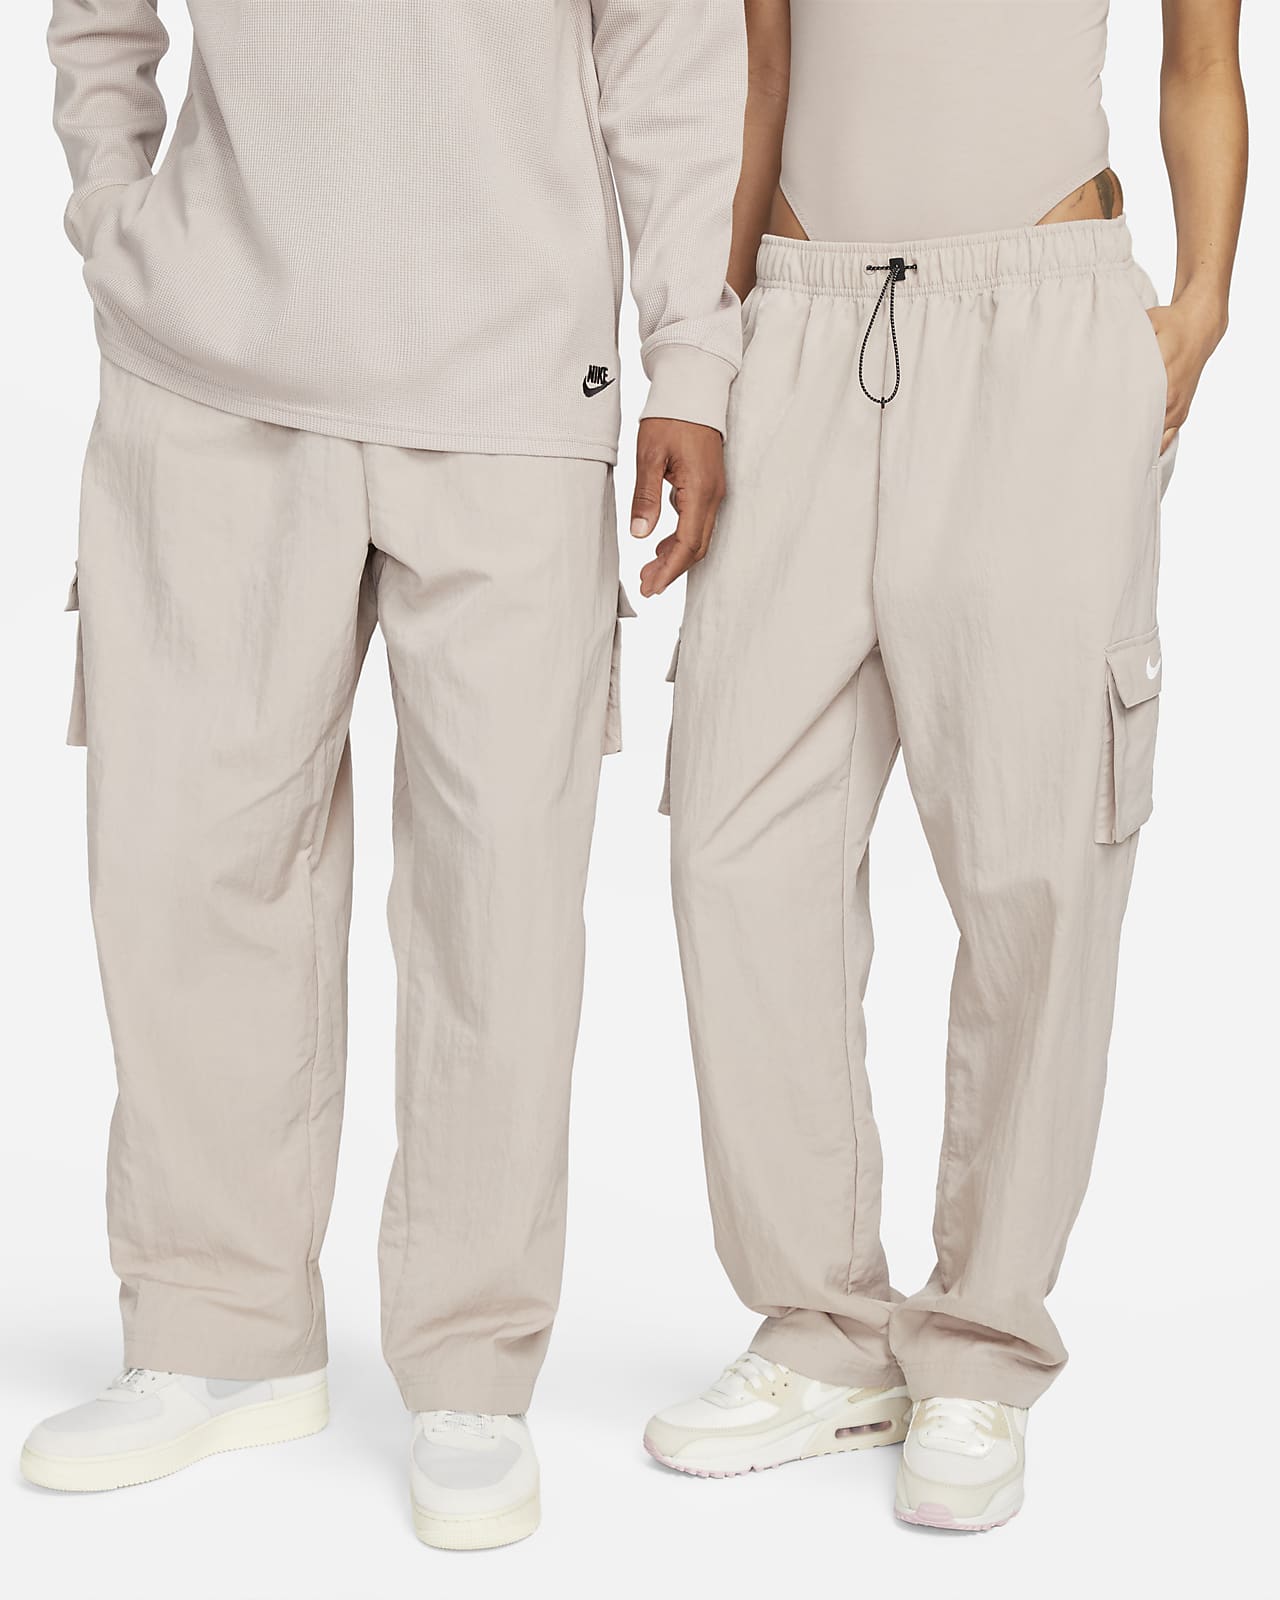 Profetie Figuur Dankzegging Nike Sportswear Essential Geweven cargobroek met hoge taille voor dames.  Nike NL